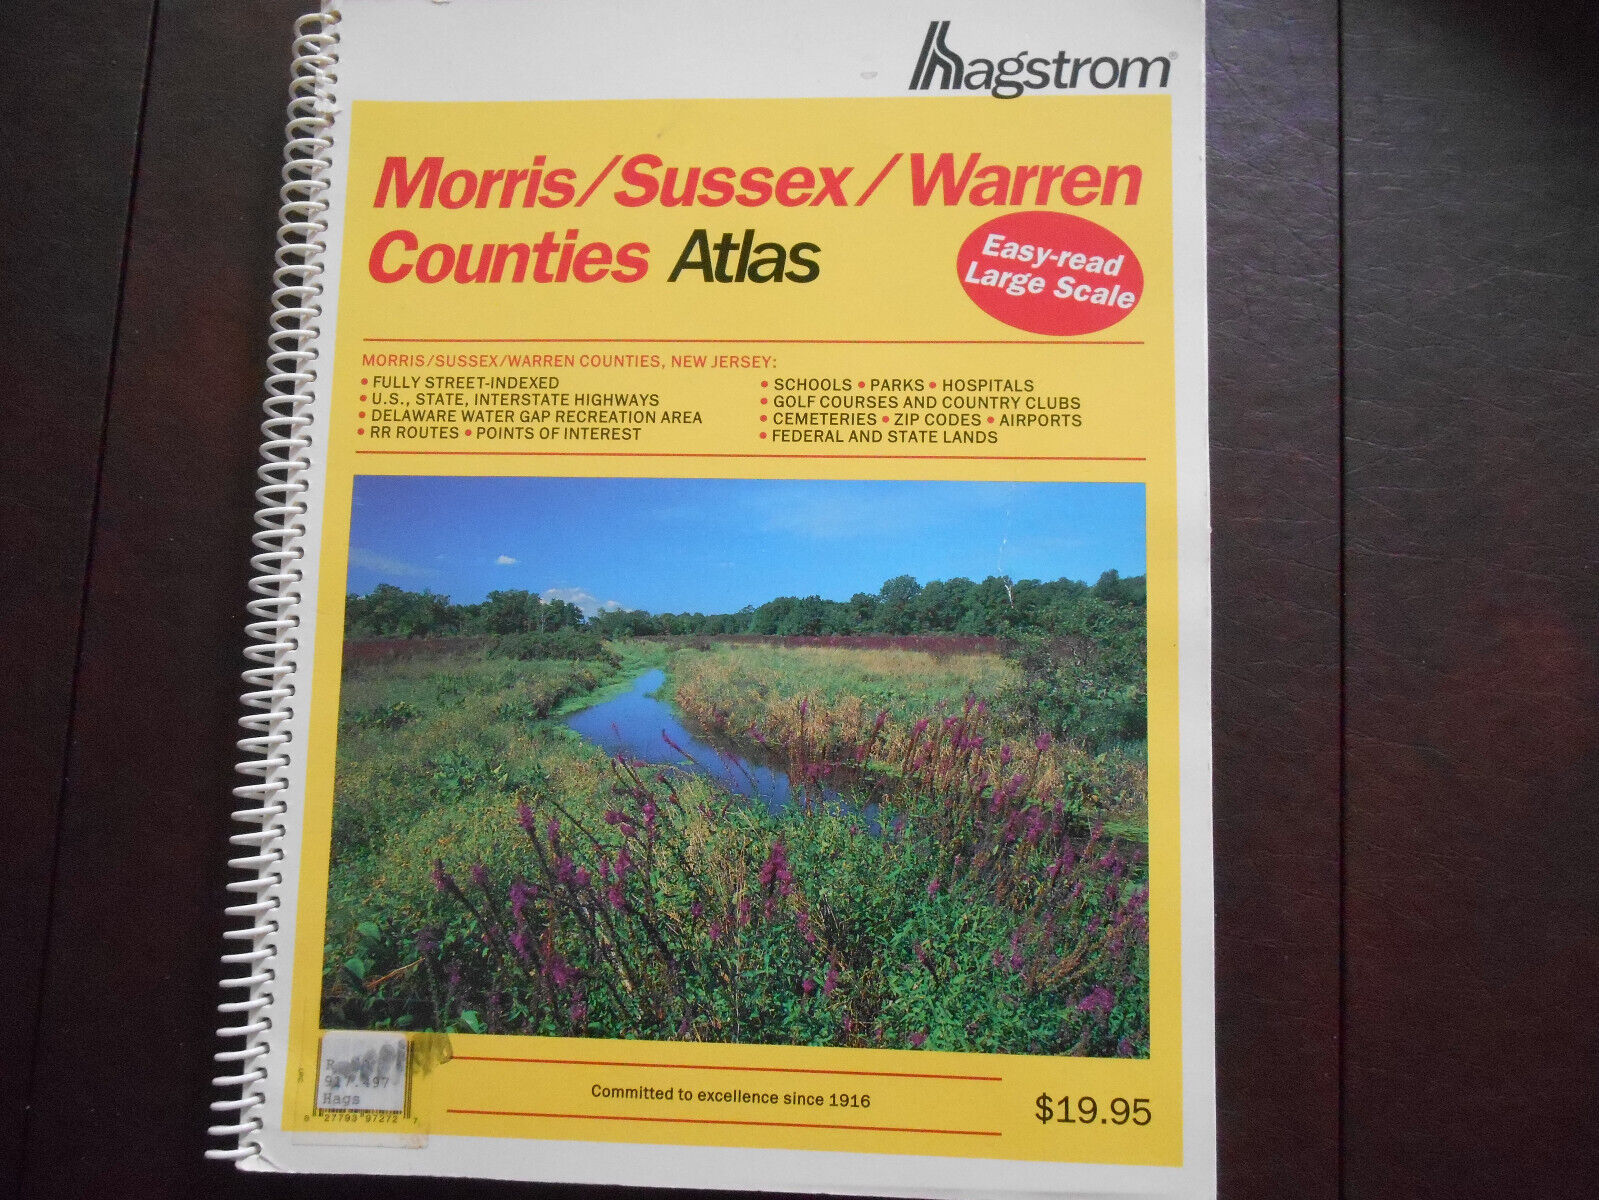 Hagstrom Morris/Sussex/Warren Counties Atlas